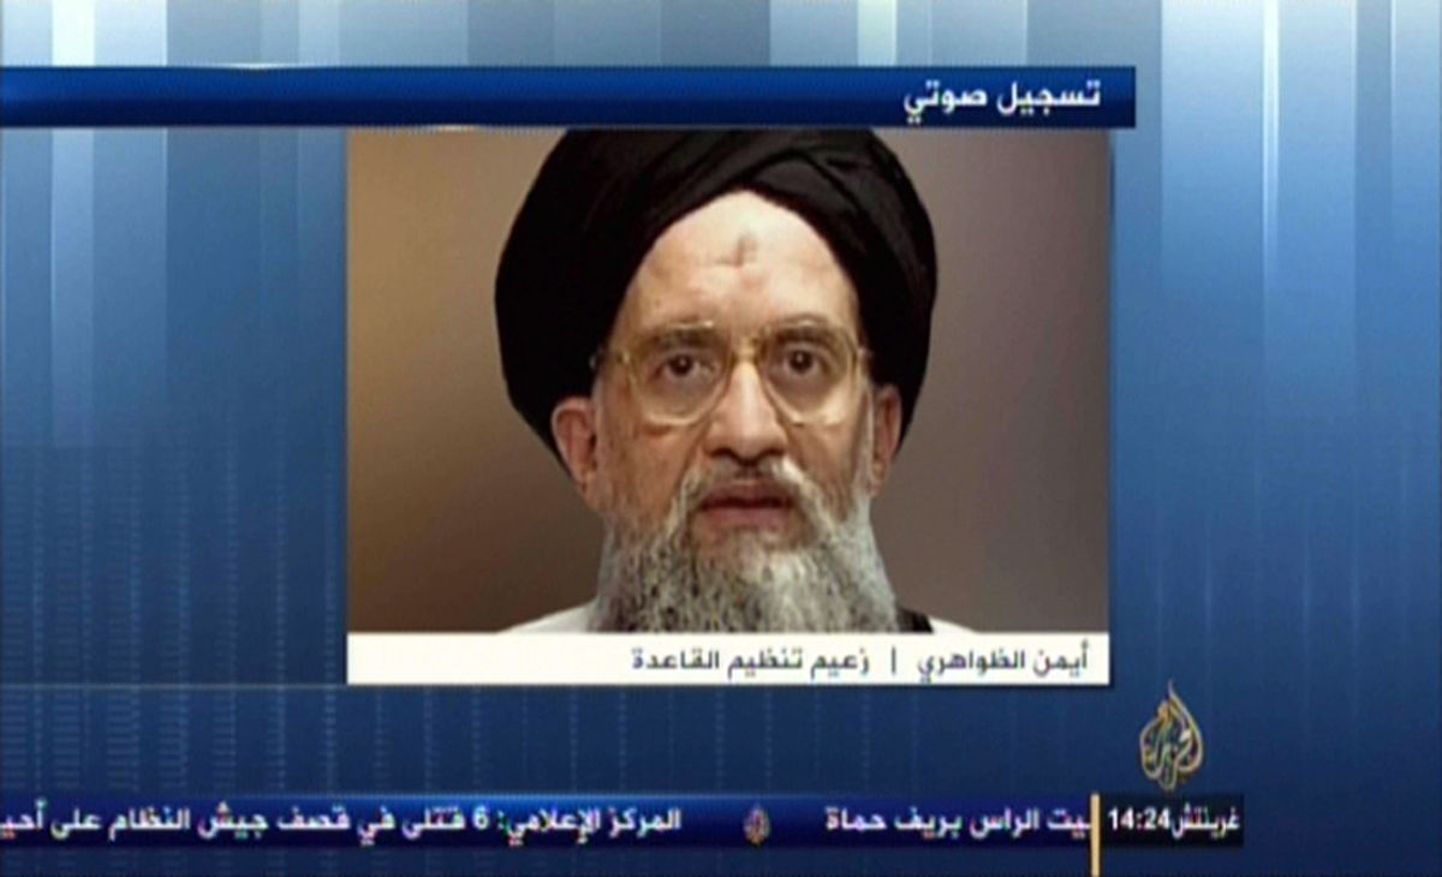 Al-Jazeera edastatud video, kus räägib  Al-Qaeda juht Ayman al-Zawahiri.